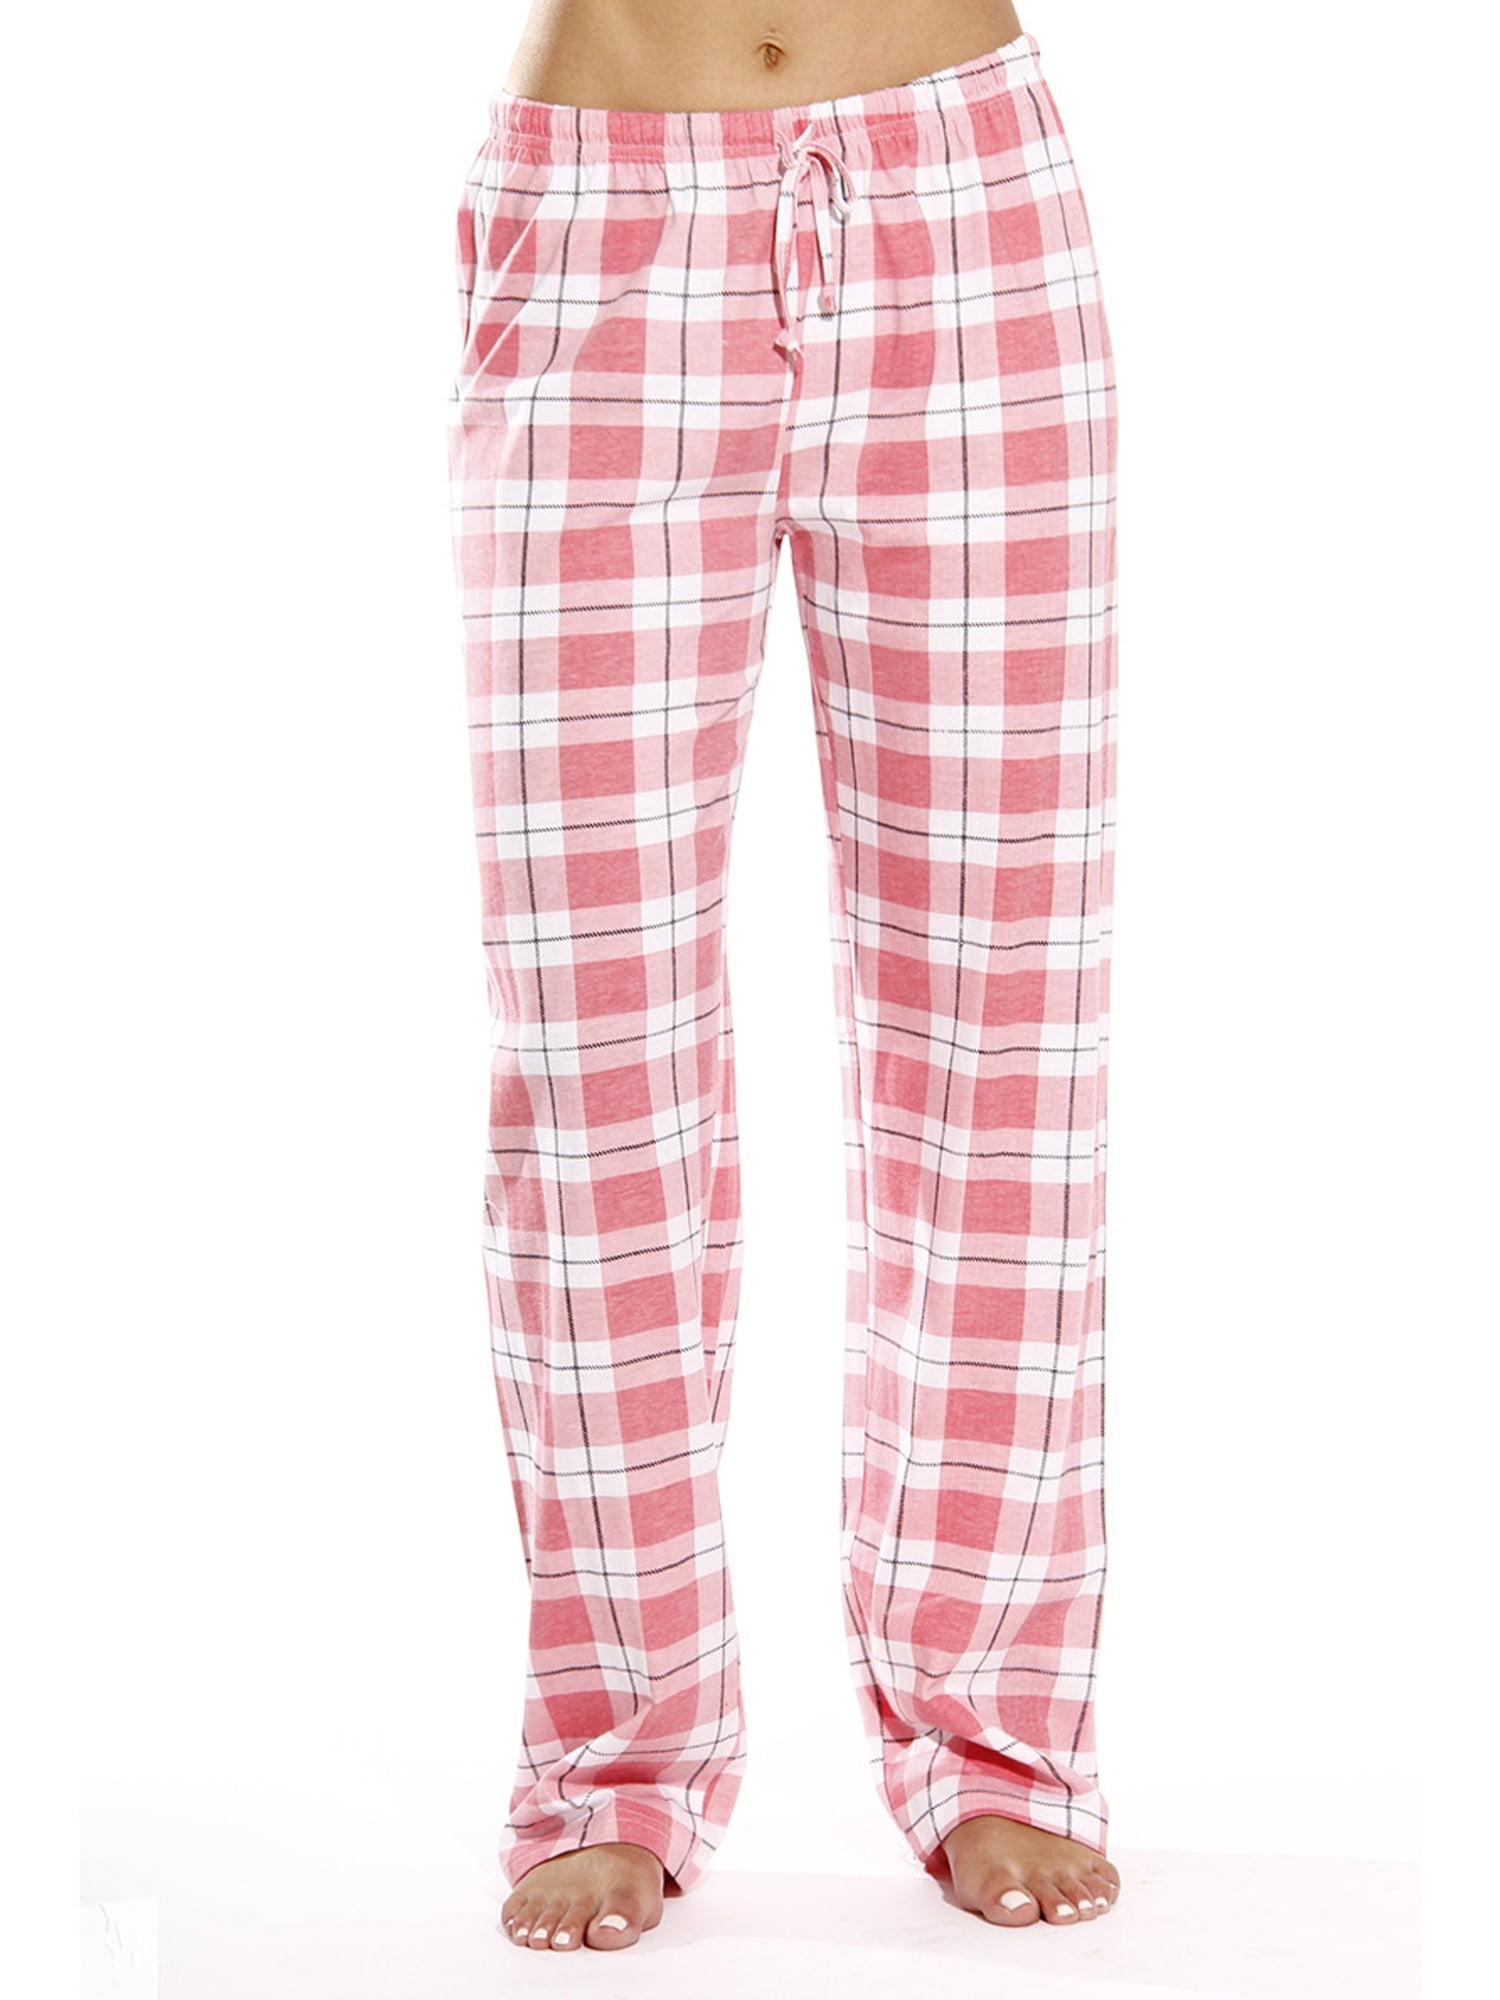 Peyakidsaa Women Plaid Pajama Pants Sleepwear Drawstring Cotton Loose ...